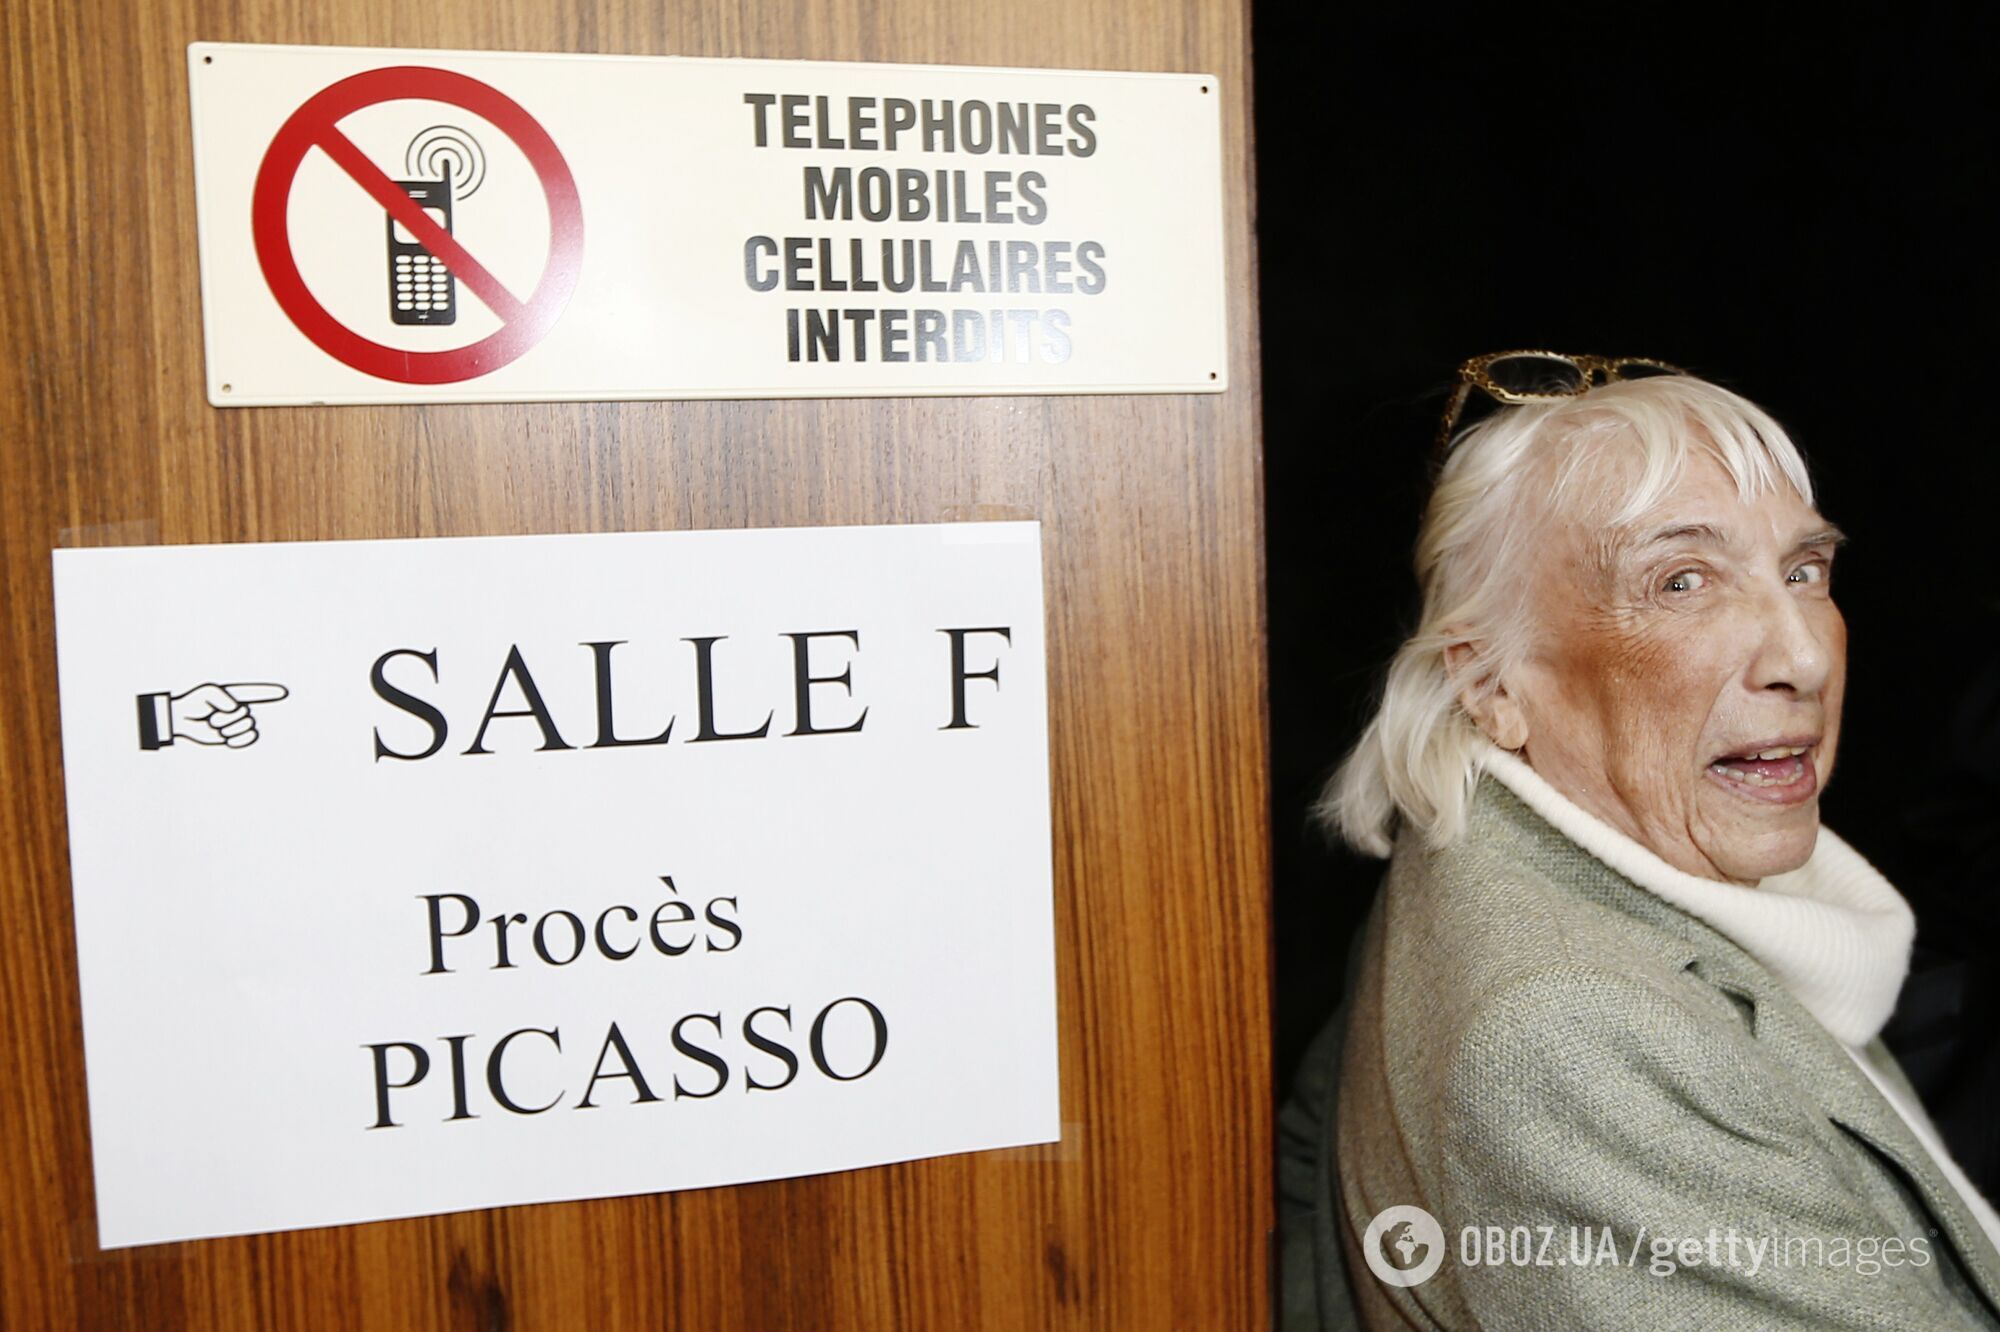 В возрасте 87 лет умерла старшая дочь Пабло Пикассо